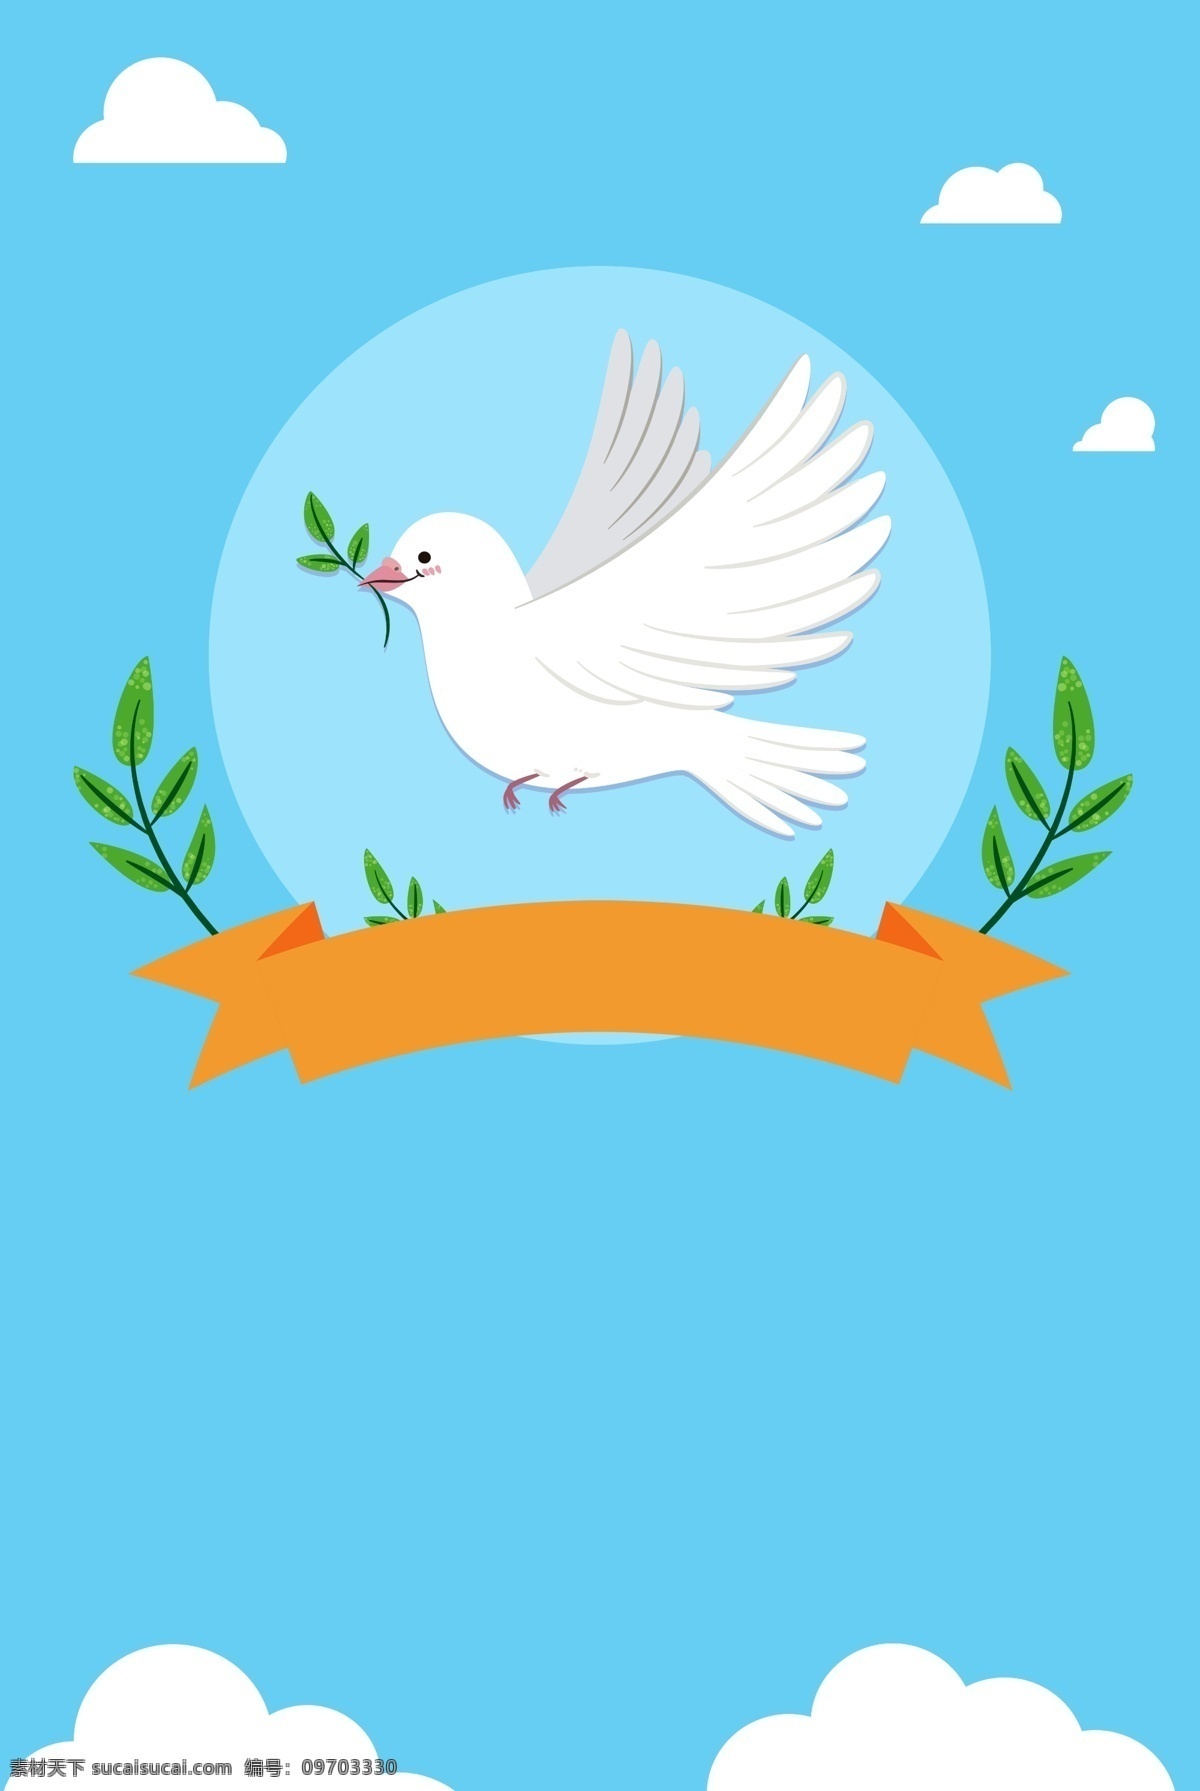 九月 二 十 世界 平日 背景 世界和平日 九月二十一 和平 和平鸽 橄榄叶 白云 维护和平